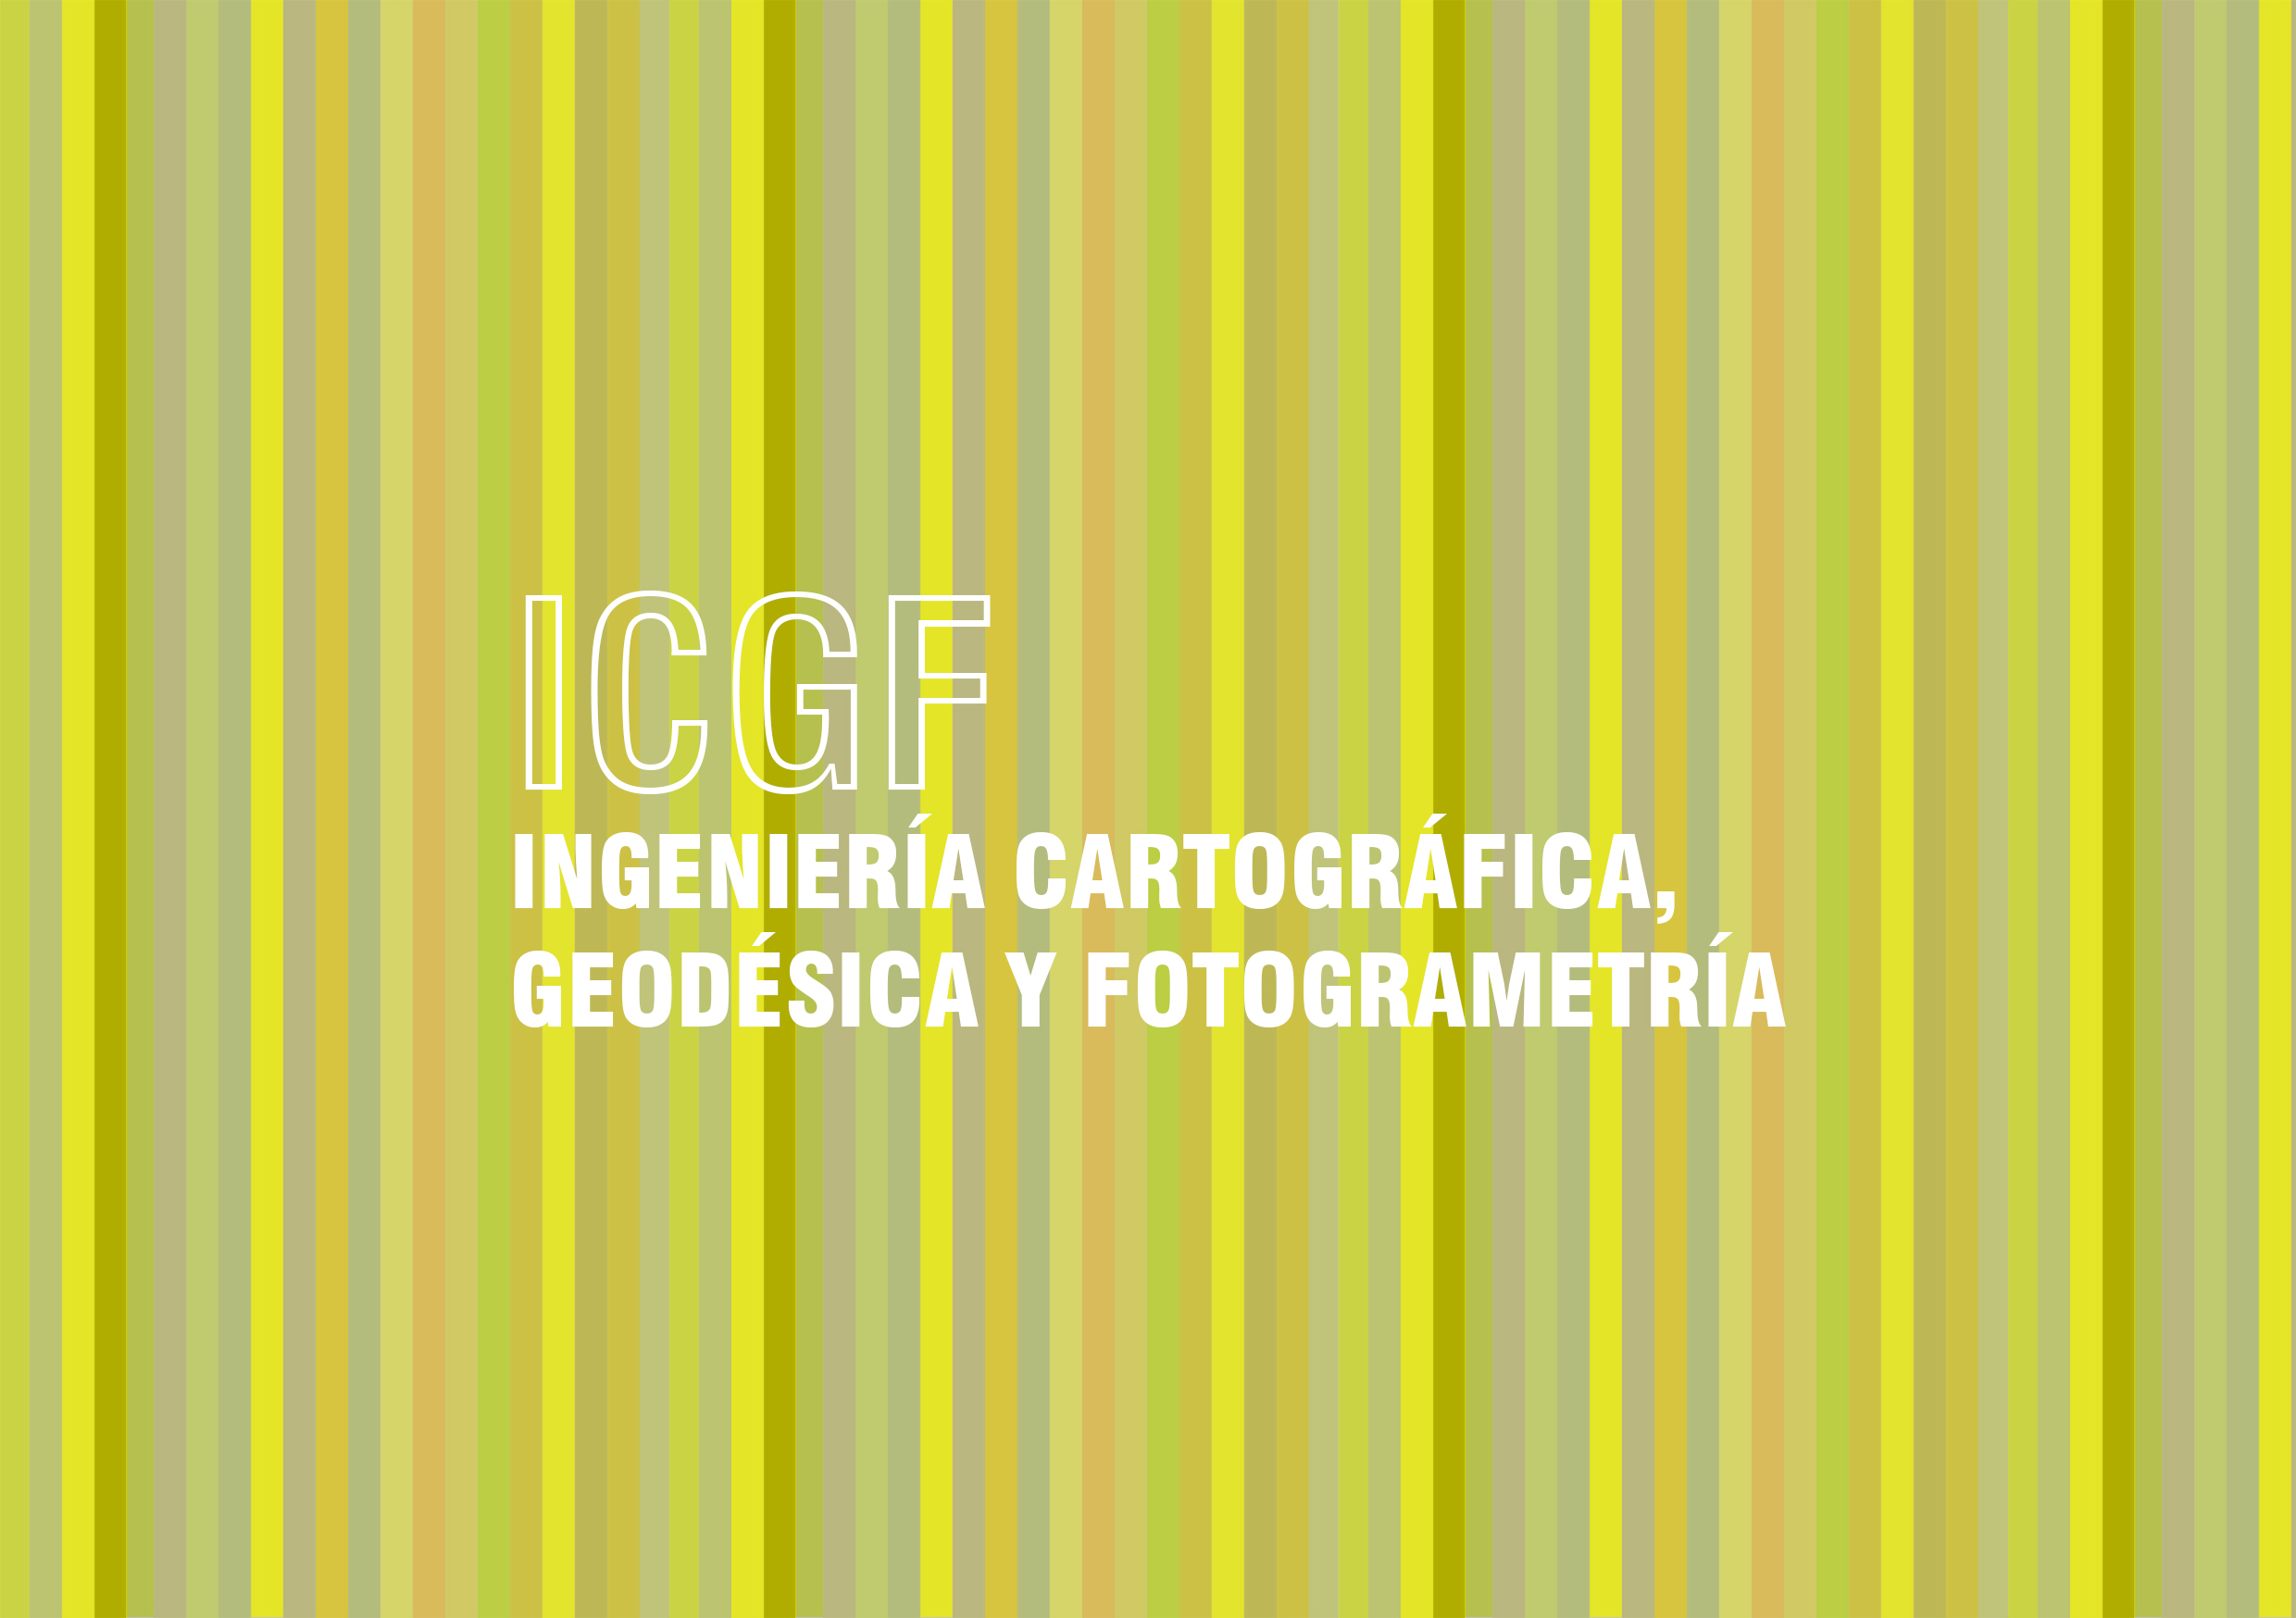 ICGF: Ingeniería Cartográfica, Geodésica y Fotogrametría